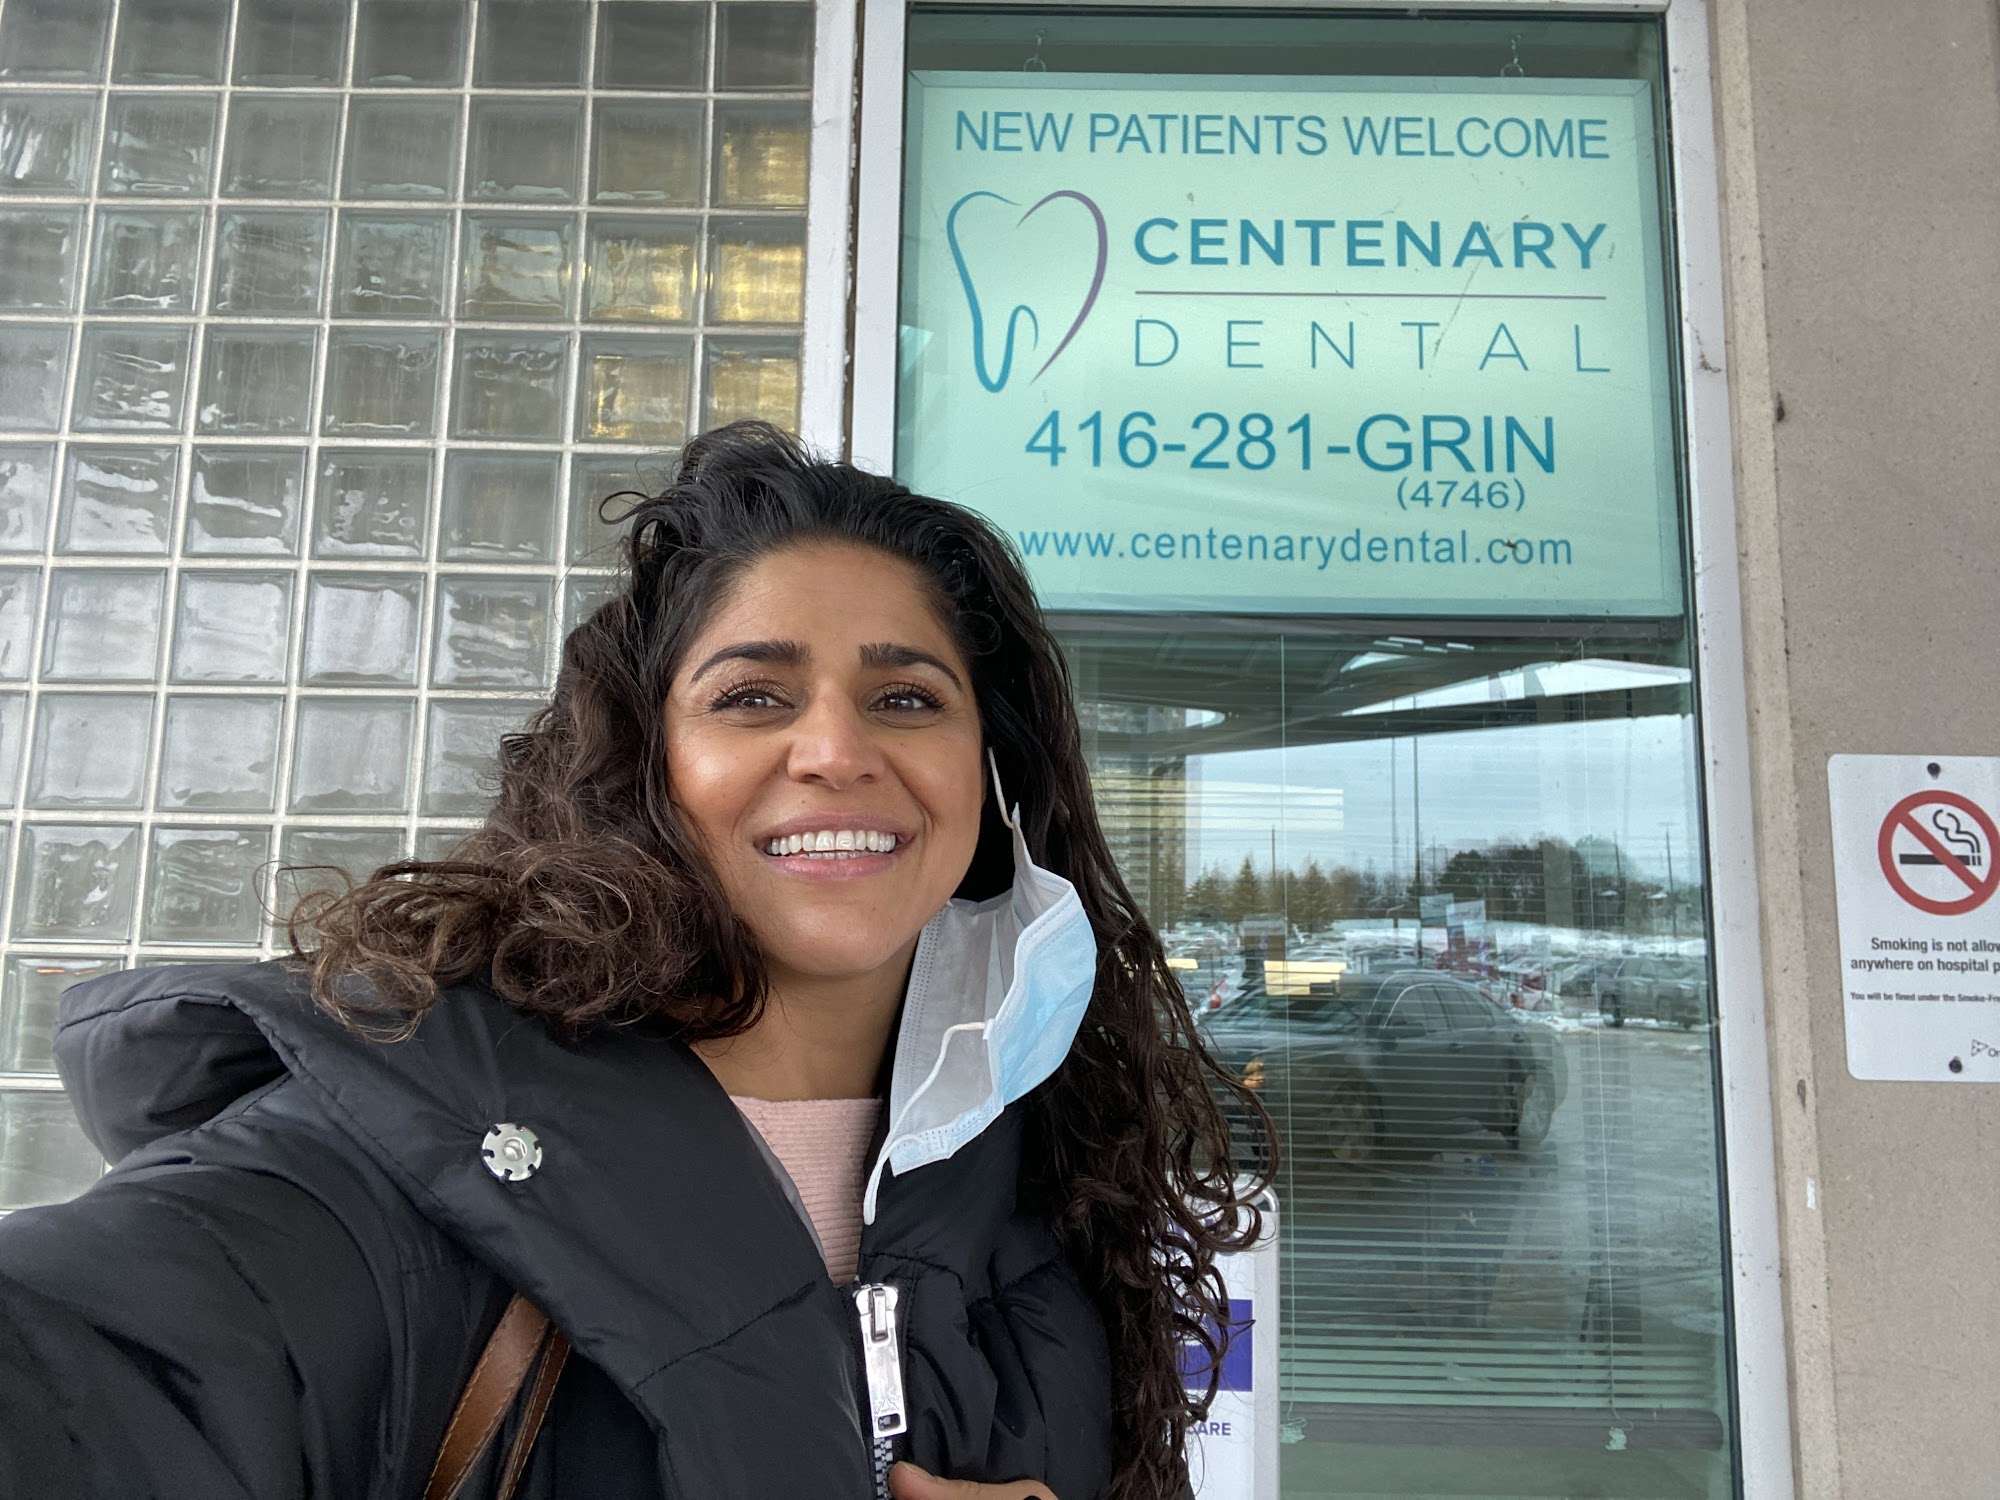 Centenary Dental